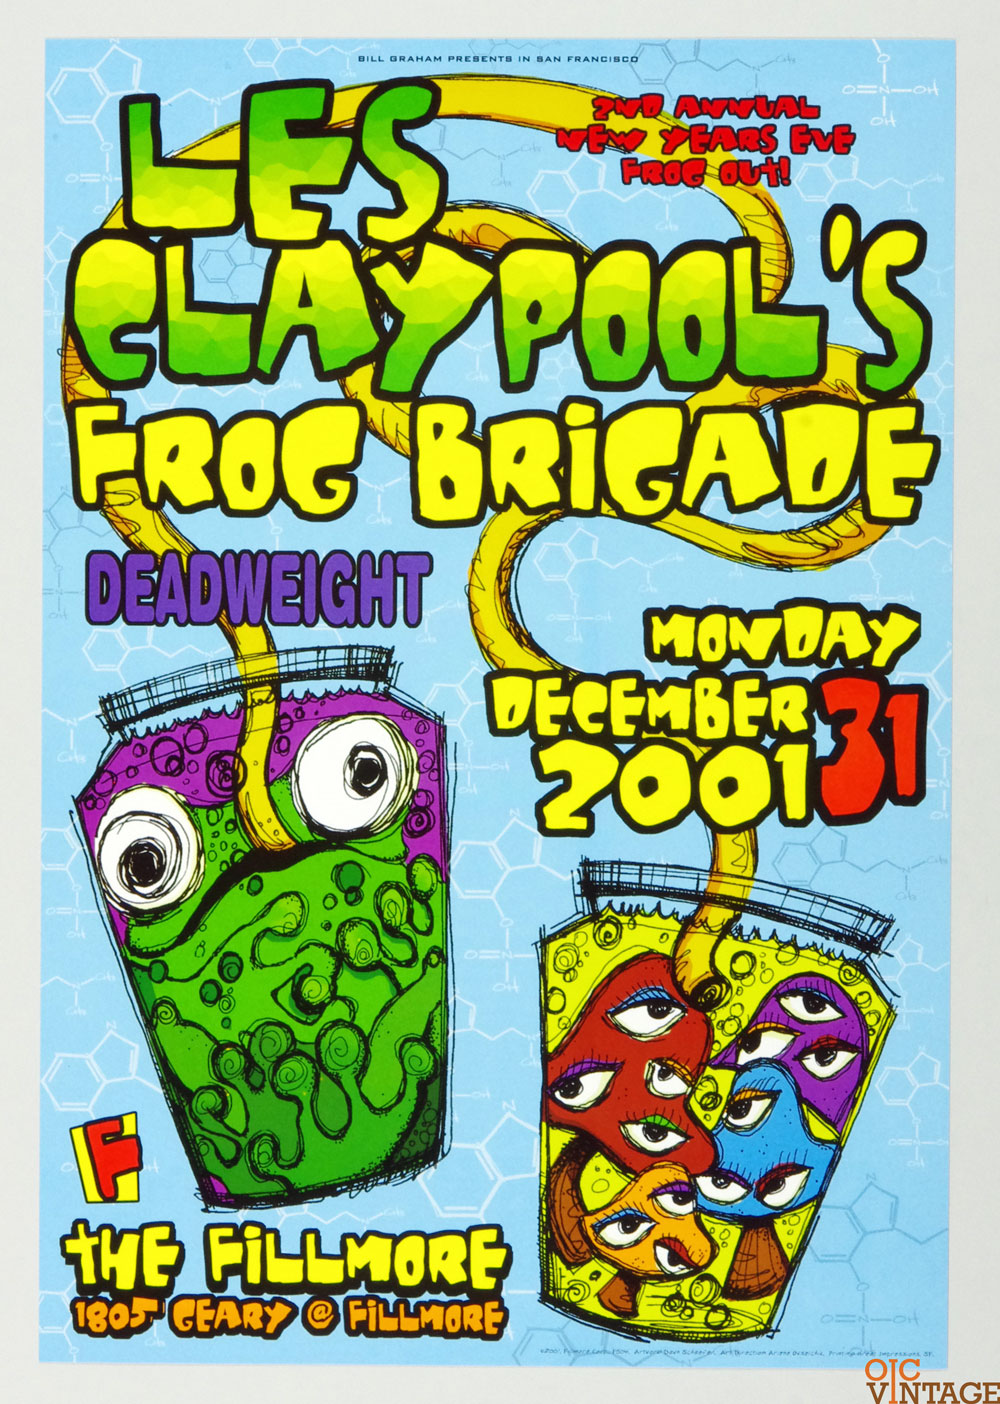 Les Claypool's Frog Brigade Deadweight Poster 2001 Dec 31 New Fillmore